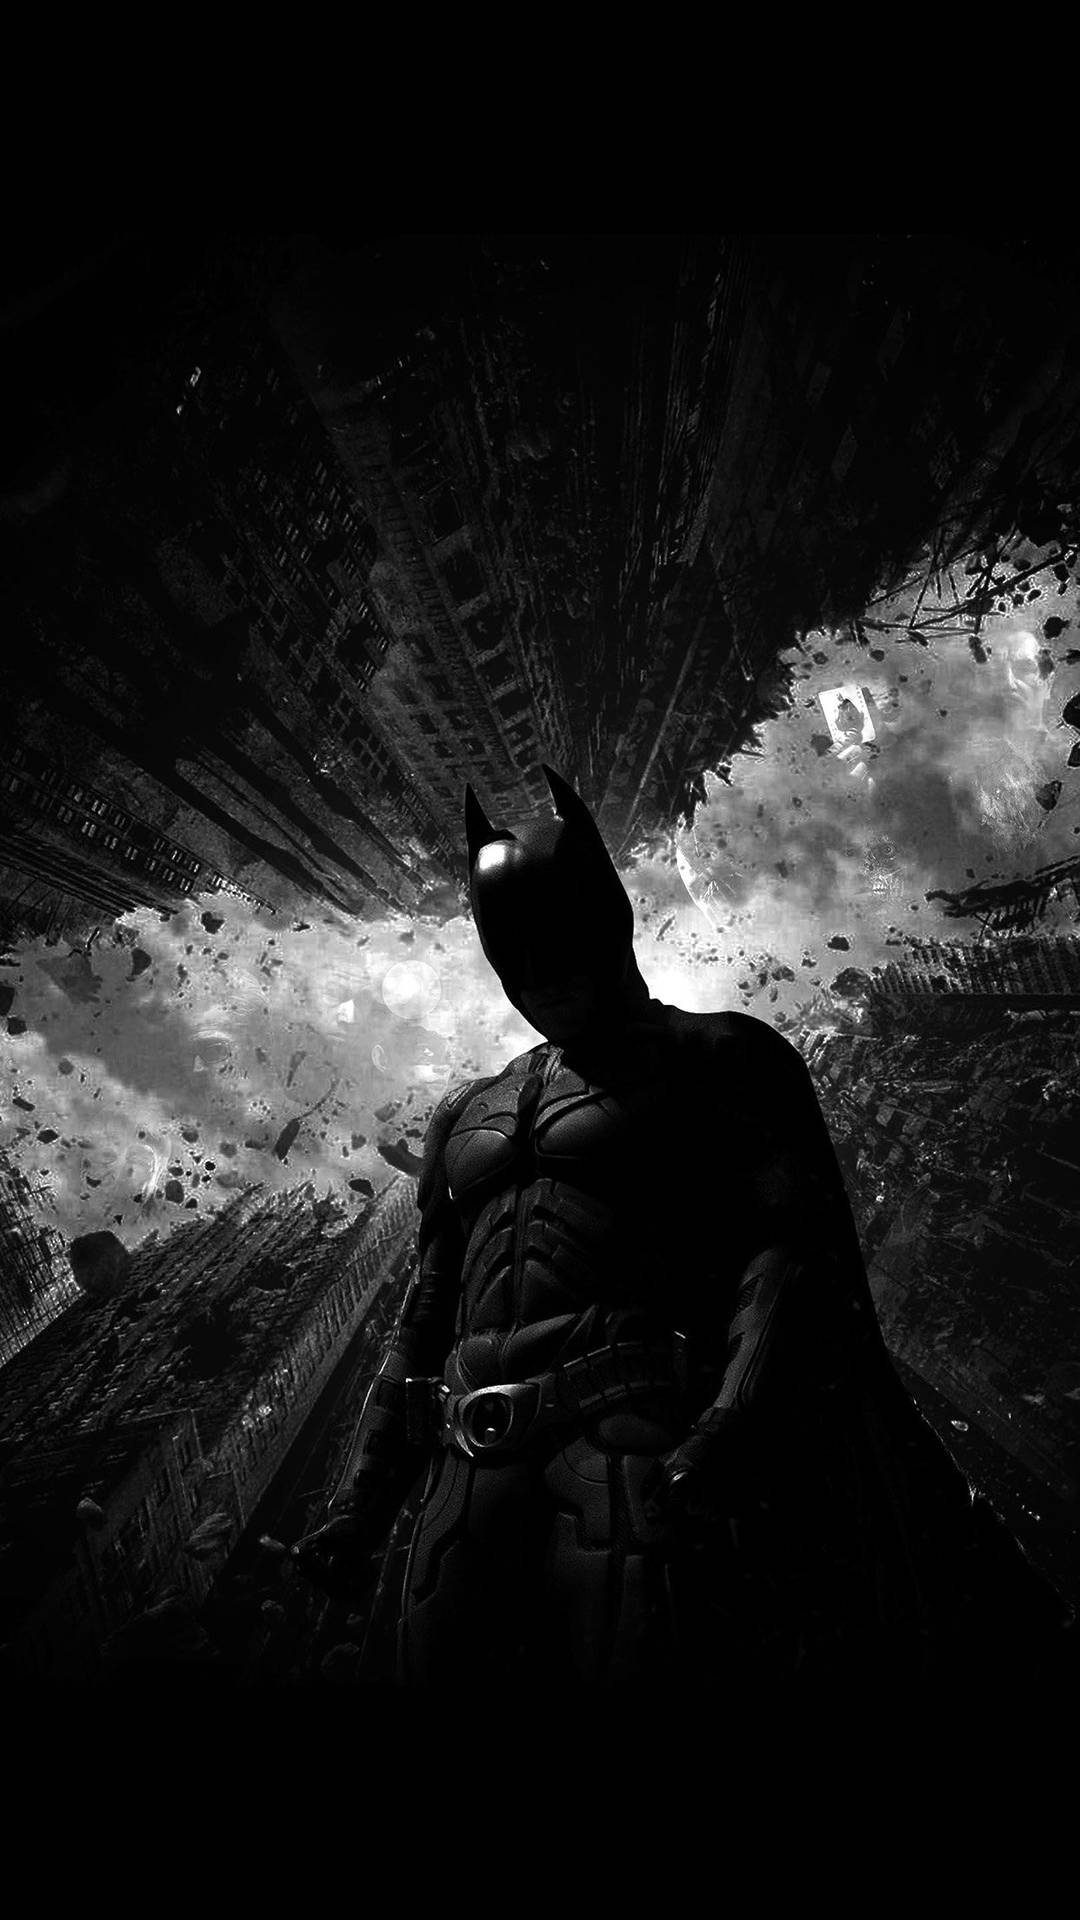 2012 Dark Knight Rises Batman Iphone Wallpaper